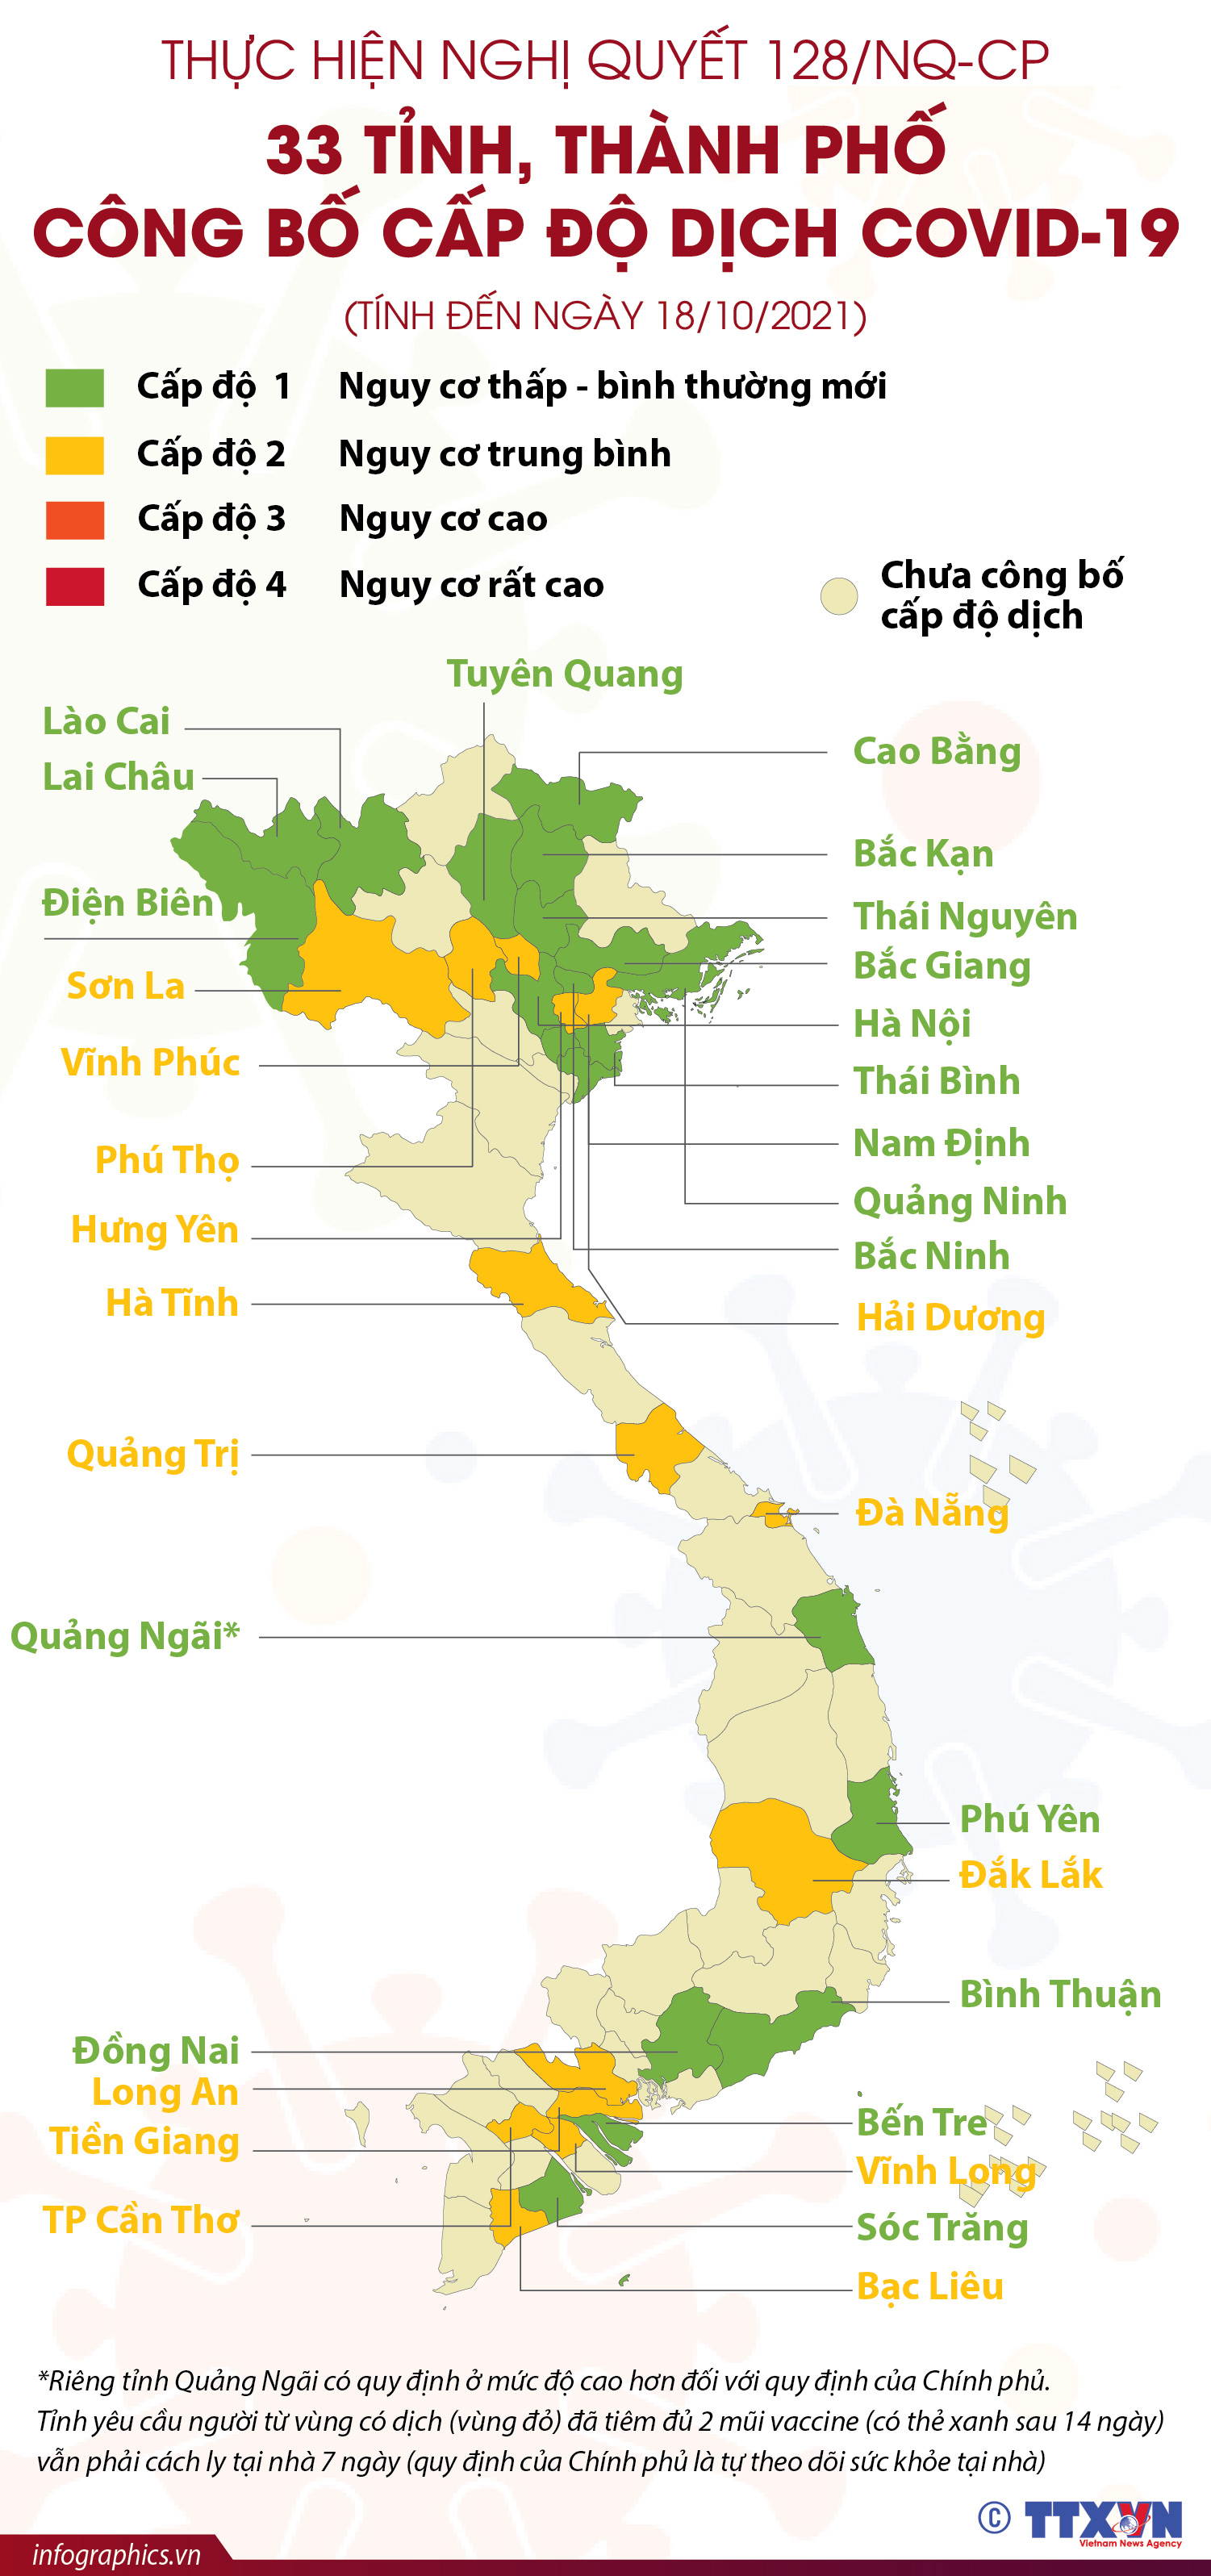 Nghị quyết 128/NQ-CP của Chính phủ về phát triển du lịch đã tạo động lực mạnh cho sự phát triển của ngành du lịch. Cùng xem qua những hình ảnh mới nhất về du lịch Việt Nam để cảm nhận sự phát triển mạnh mẽ của ngành này.